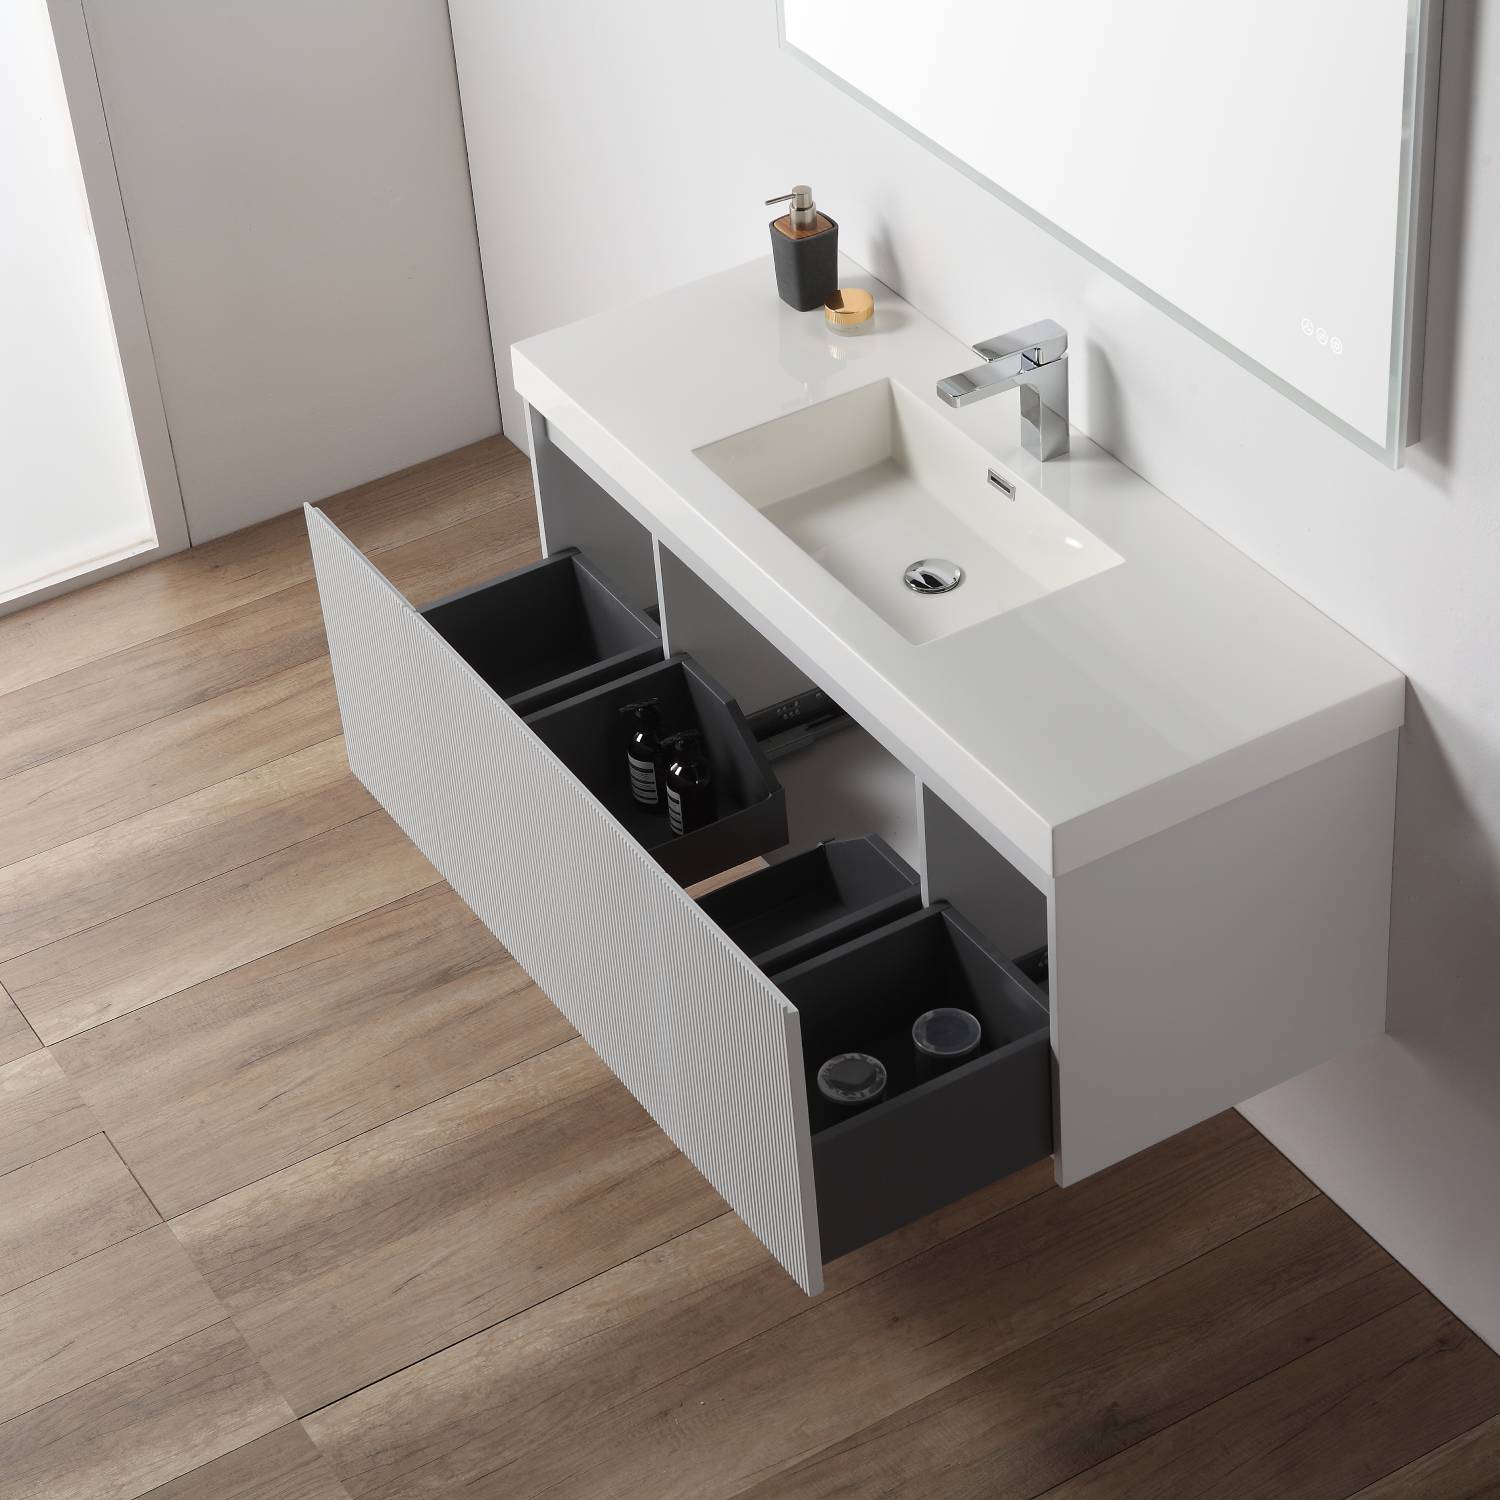 Positano 48" Luxury Single Bathroom Vanity with Acrylic Sink